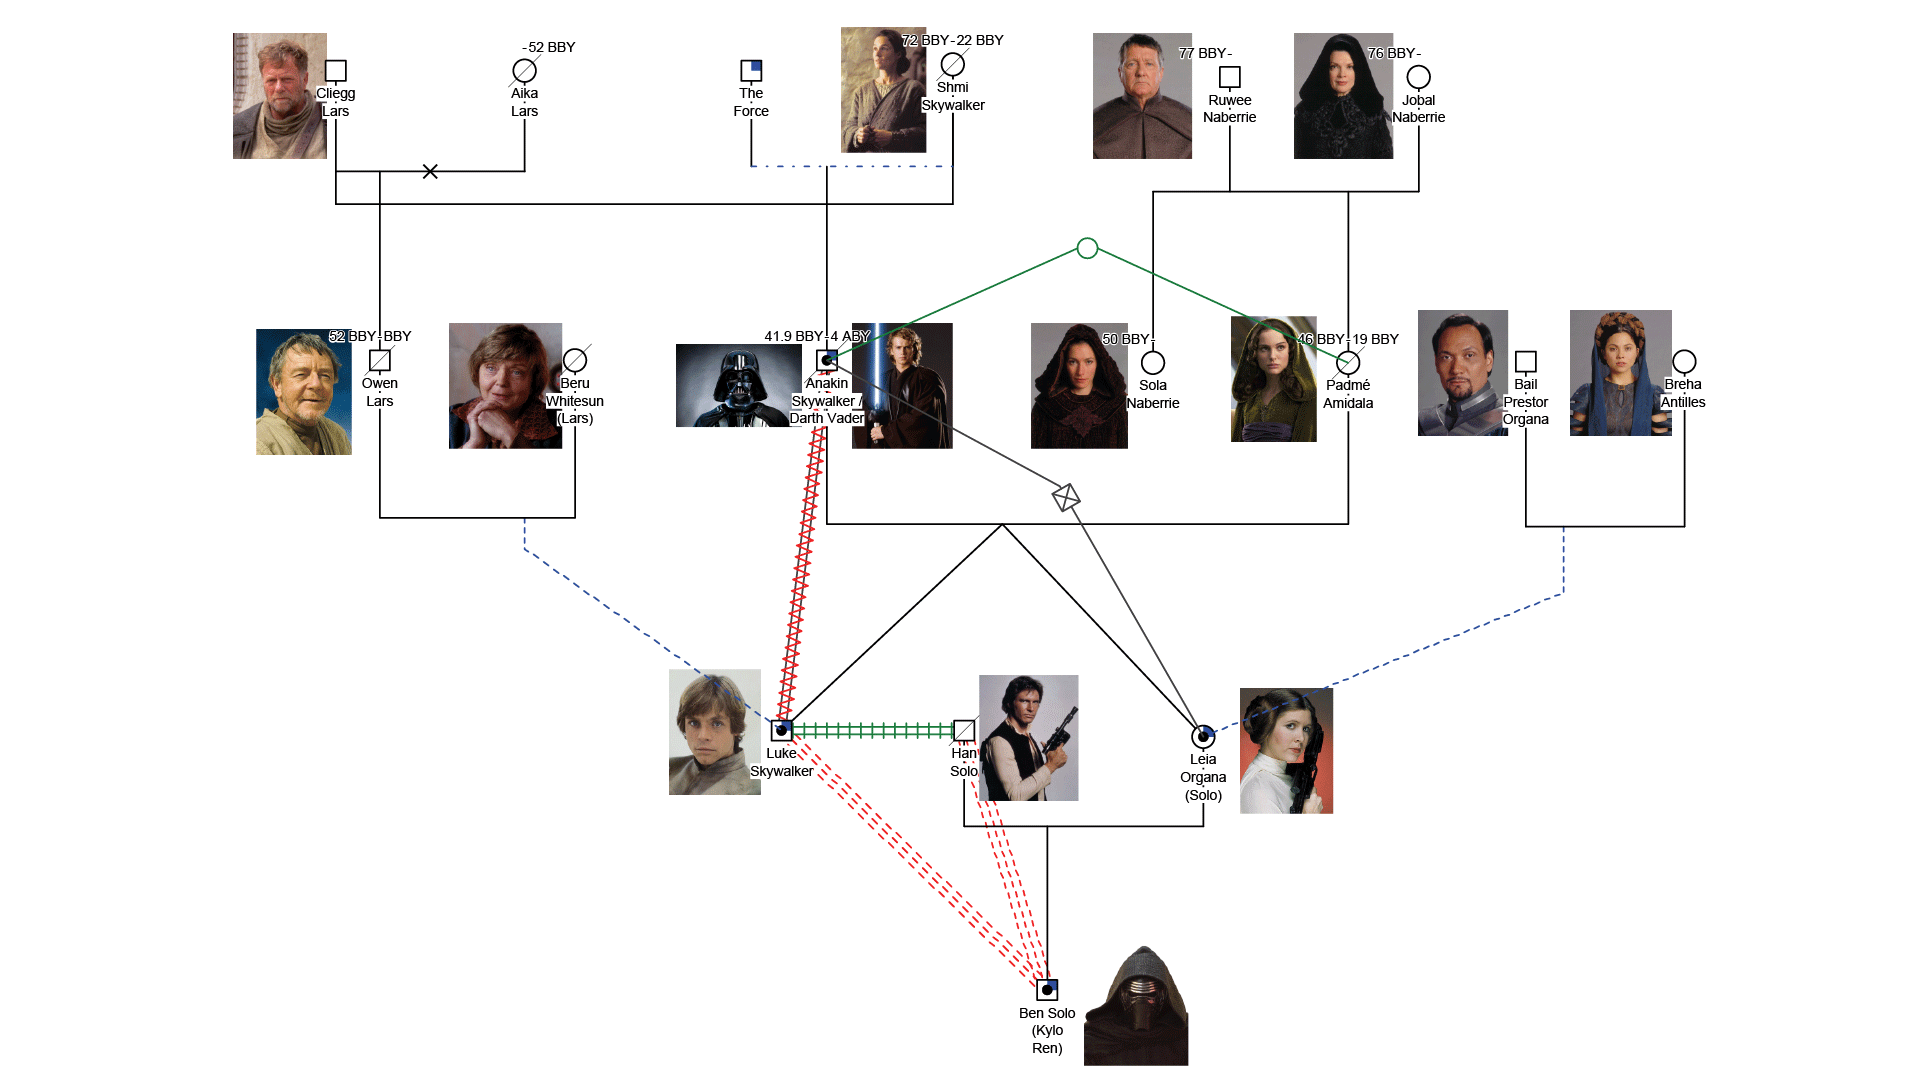 Star Wars Skywalker family tree